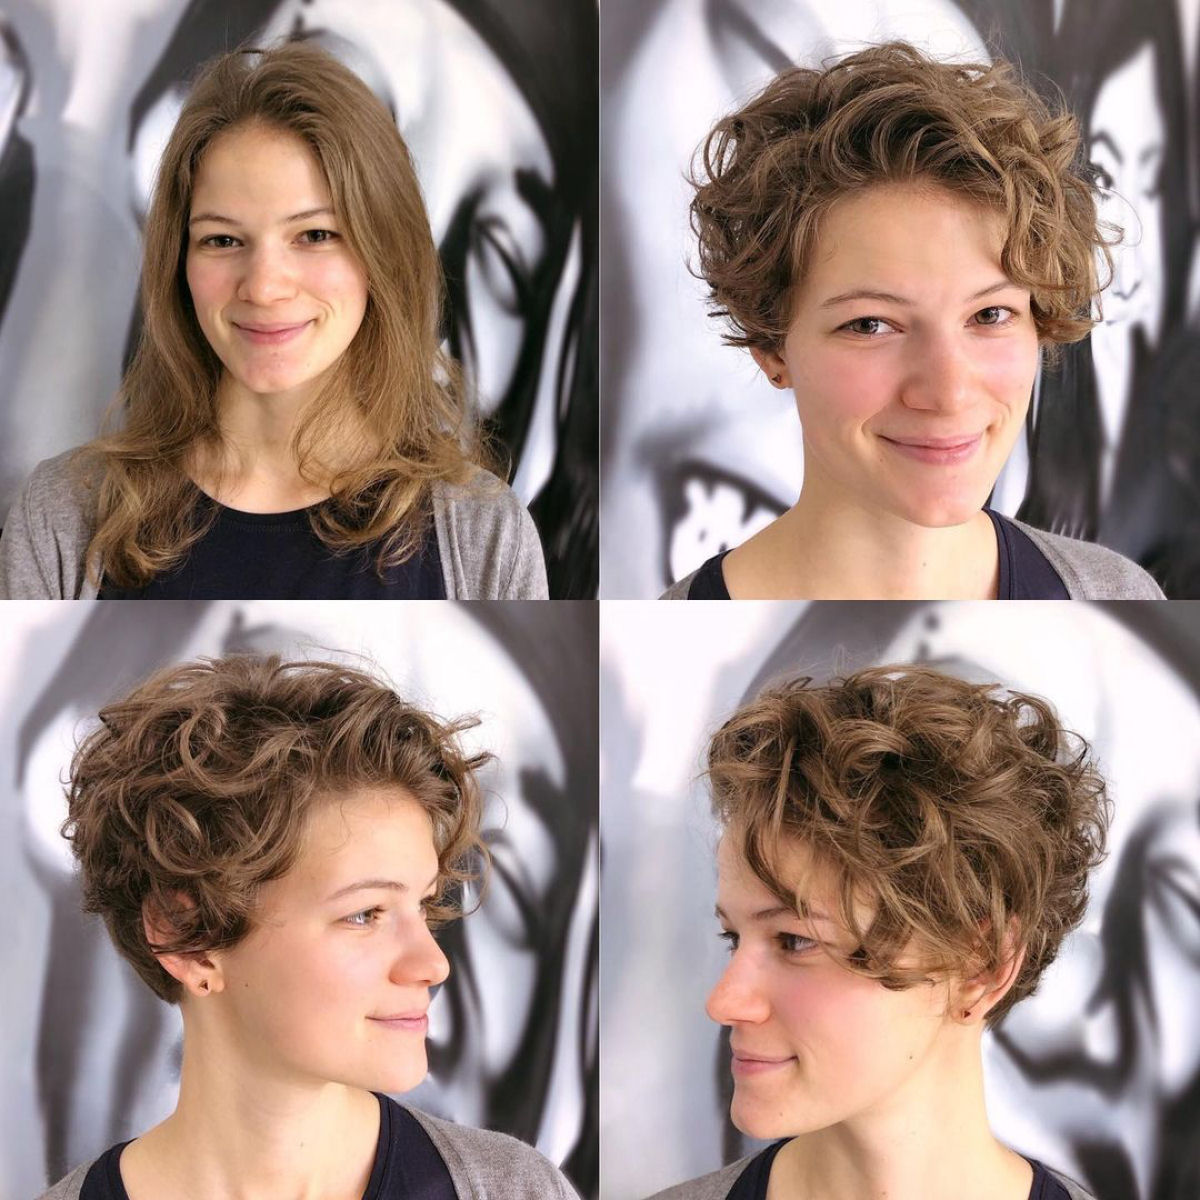 Cabeleireira moscovita demonstra que a beleza não se mede pelo comprimento do cabelo 16